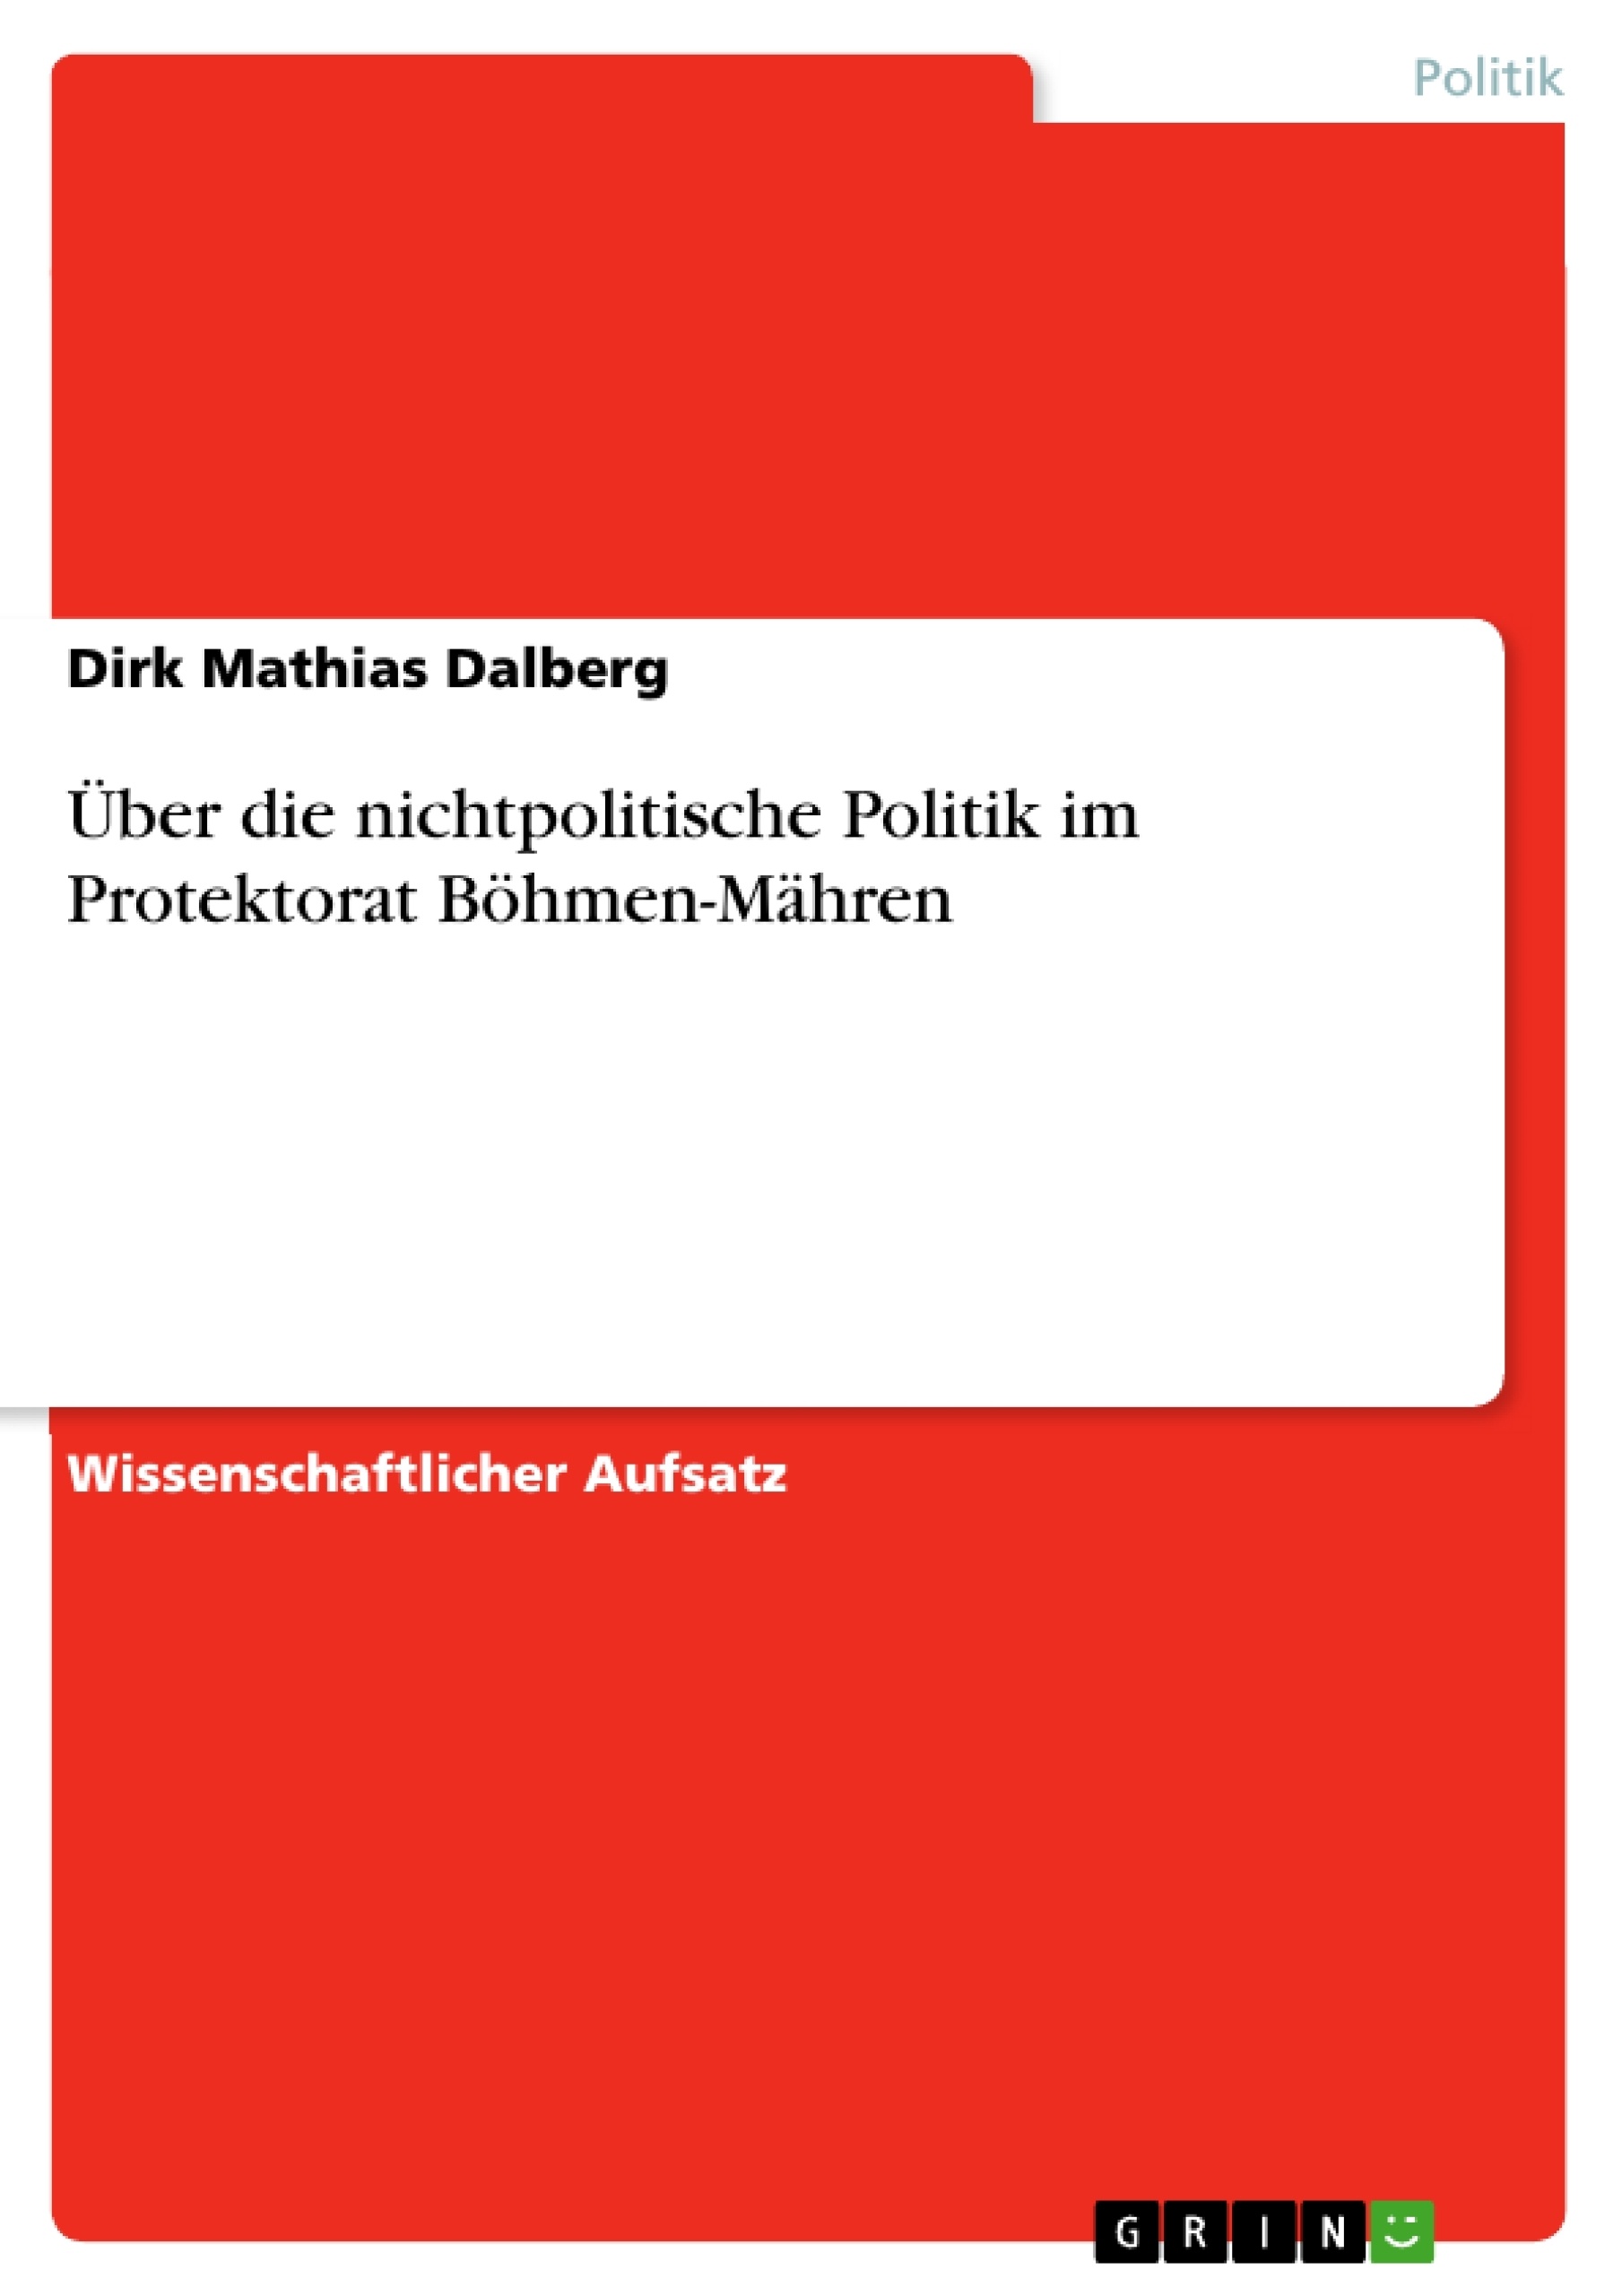 Title: Über die nichtpolitische Politik im Protektorat Böhmen-Mähren